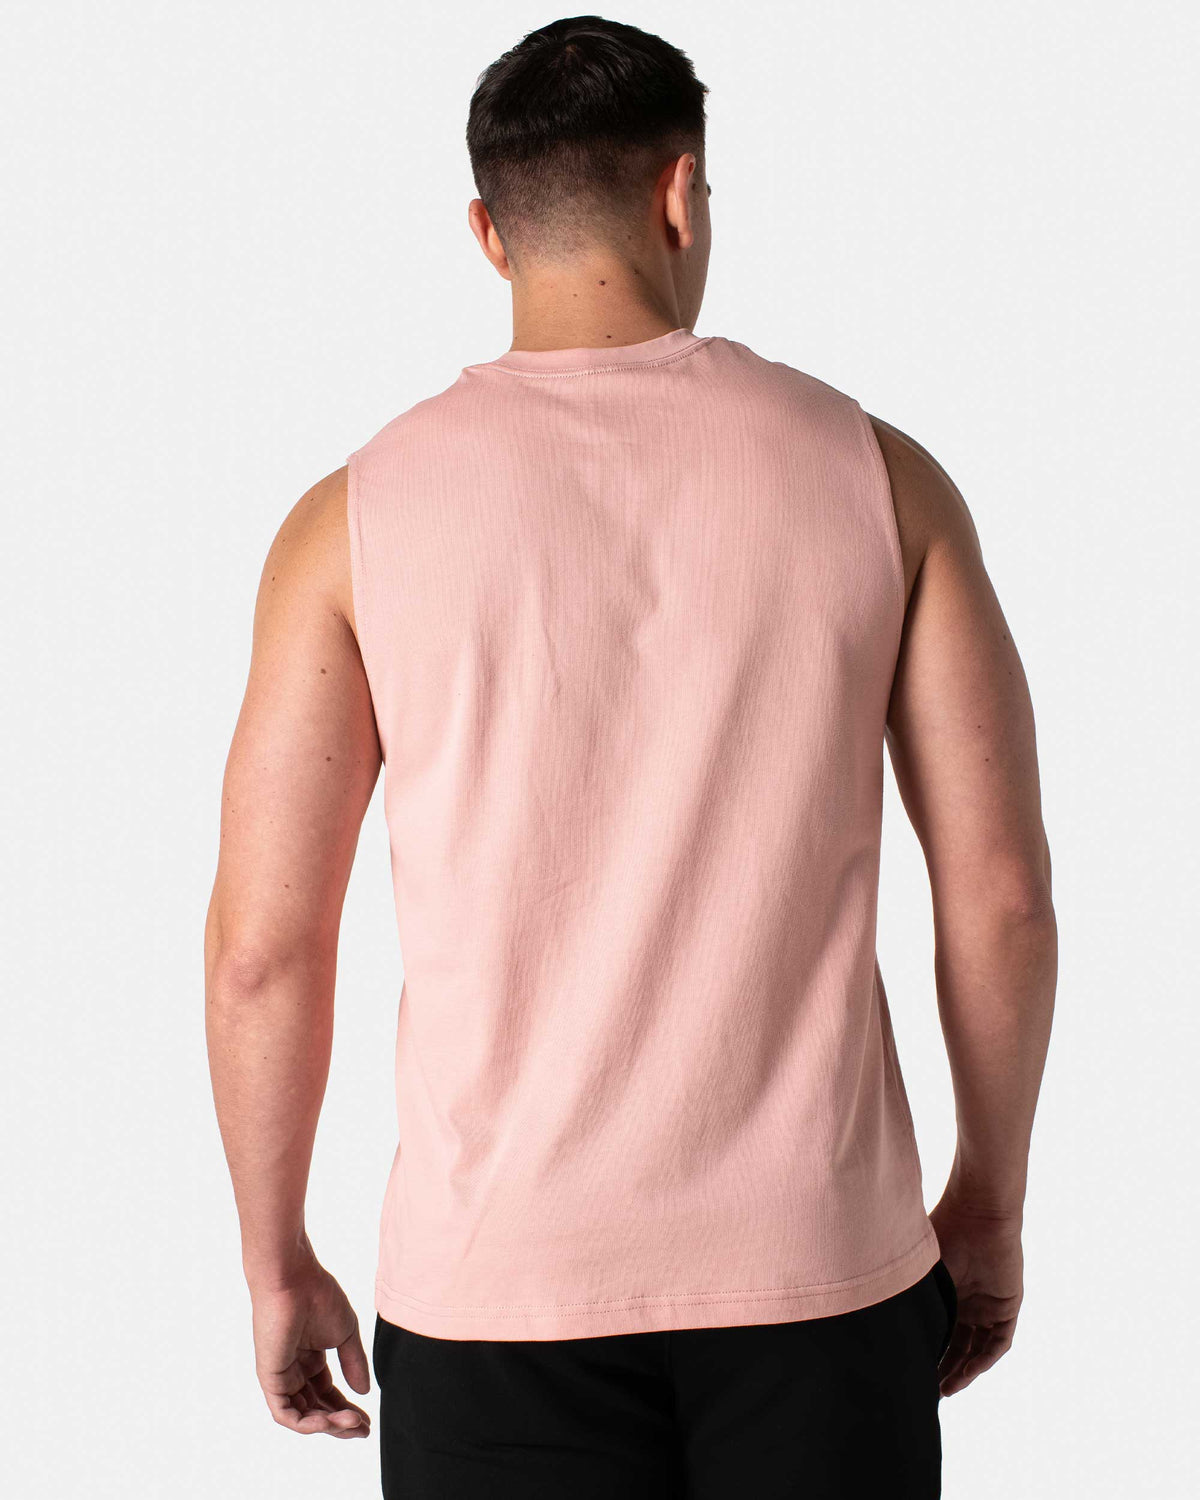 Core Muscle Cut Tank - Pink